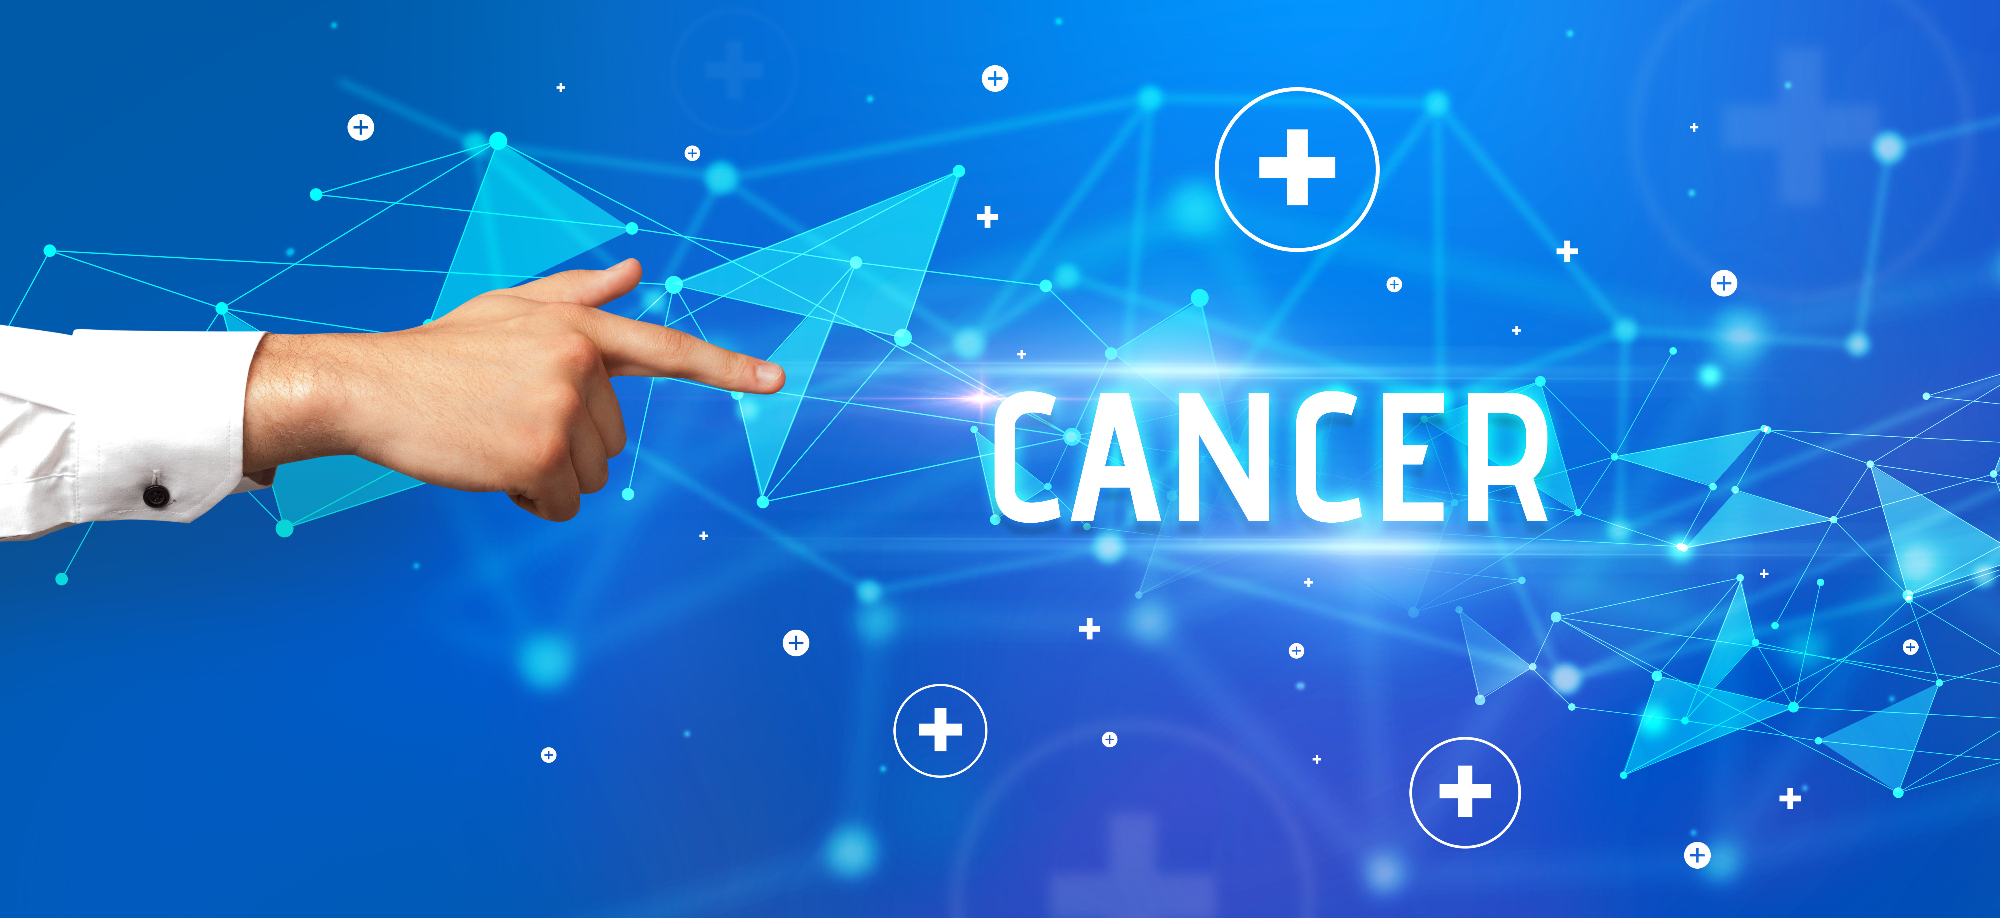 Odgovori na vprašanje, kako premagati raka so danes vedno bolj dostopni